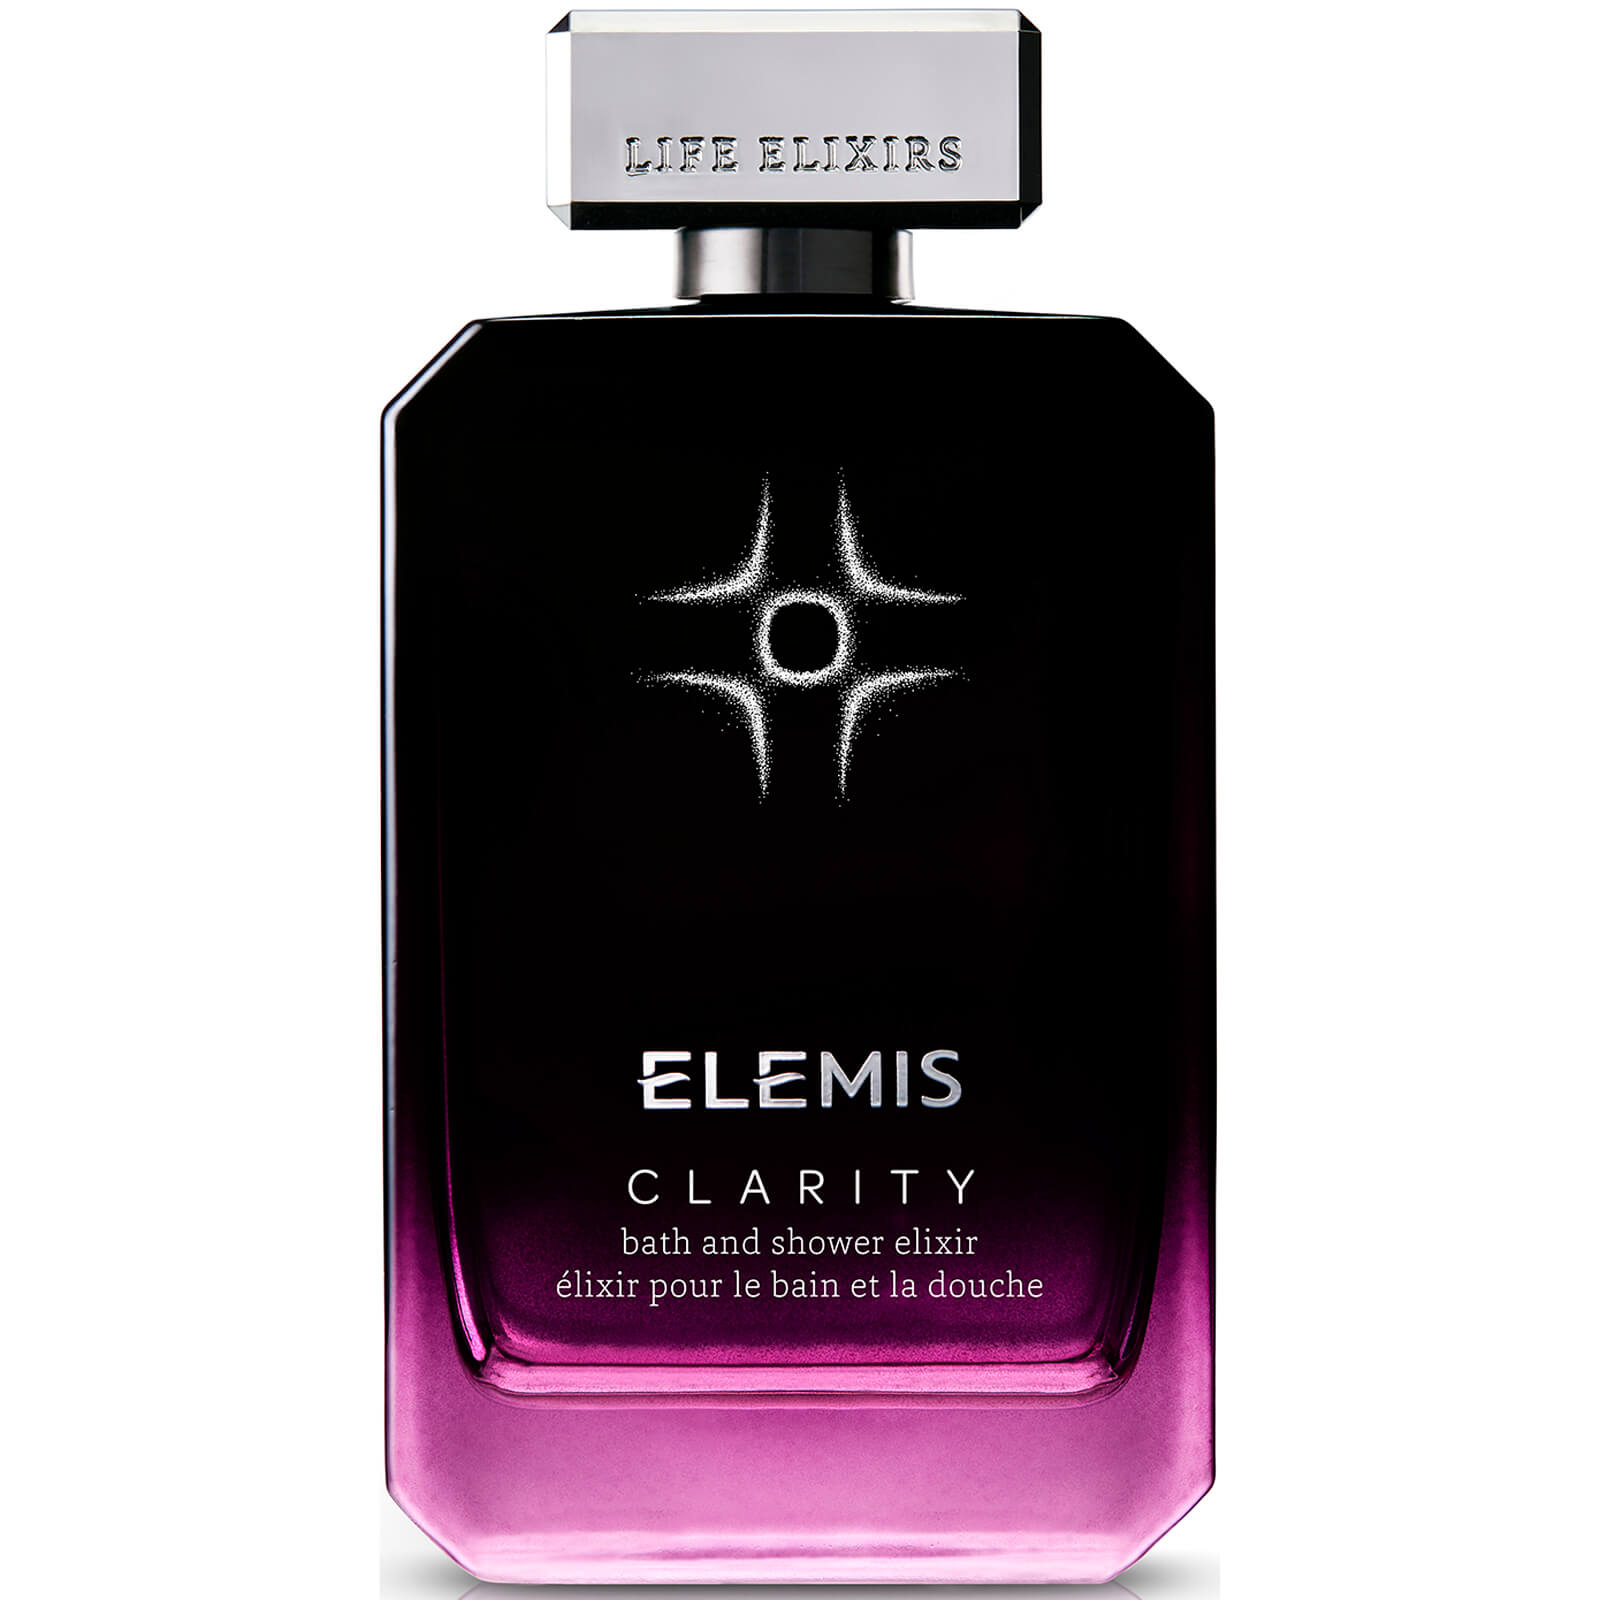 Elixir para baño y ducha Clarity de Elemis 100 ml